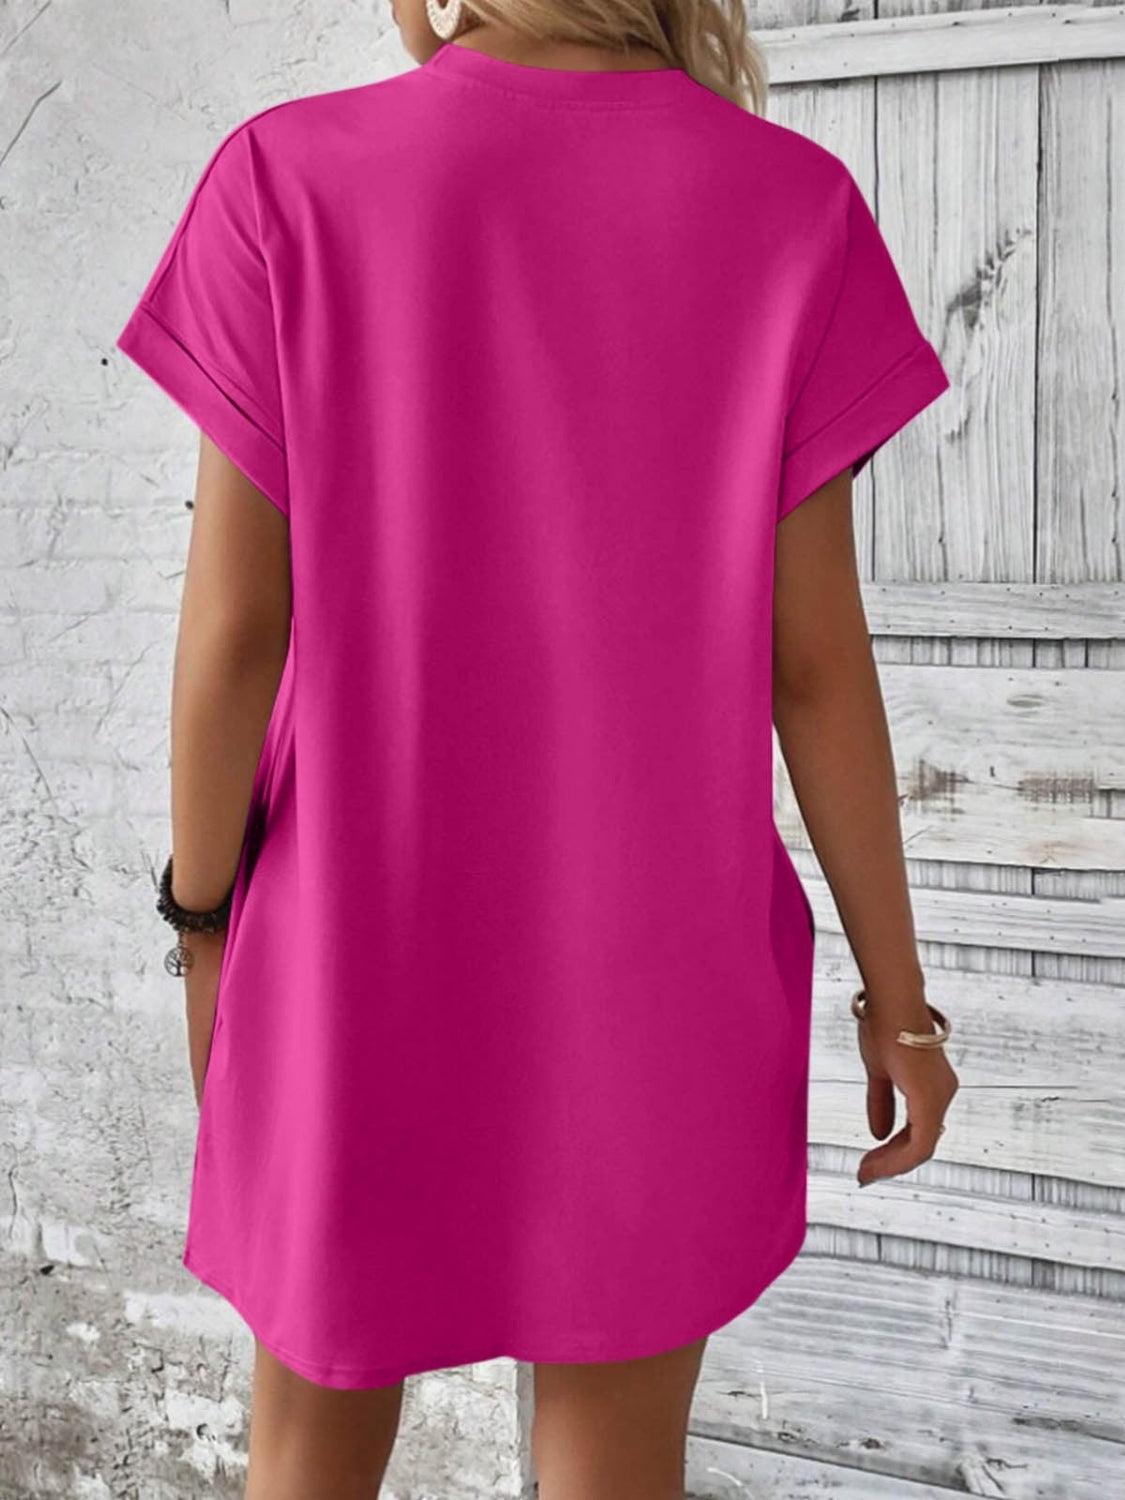 Bona Fide Fashion - Round Neck Short Sleeve Mini Dress - Women Fashion - Bona Fide Fashion